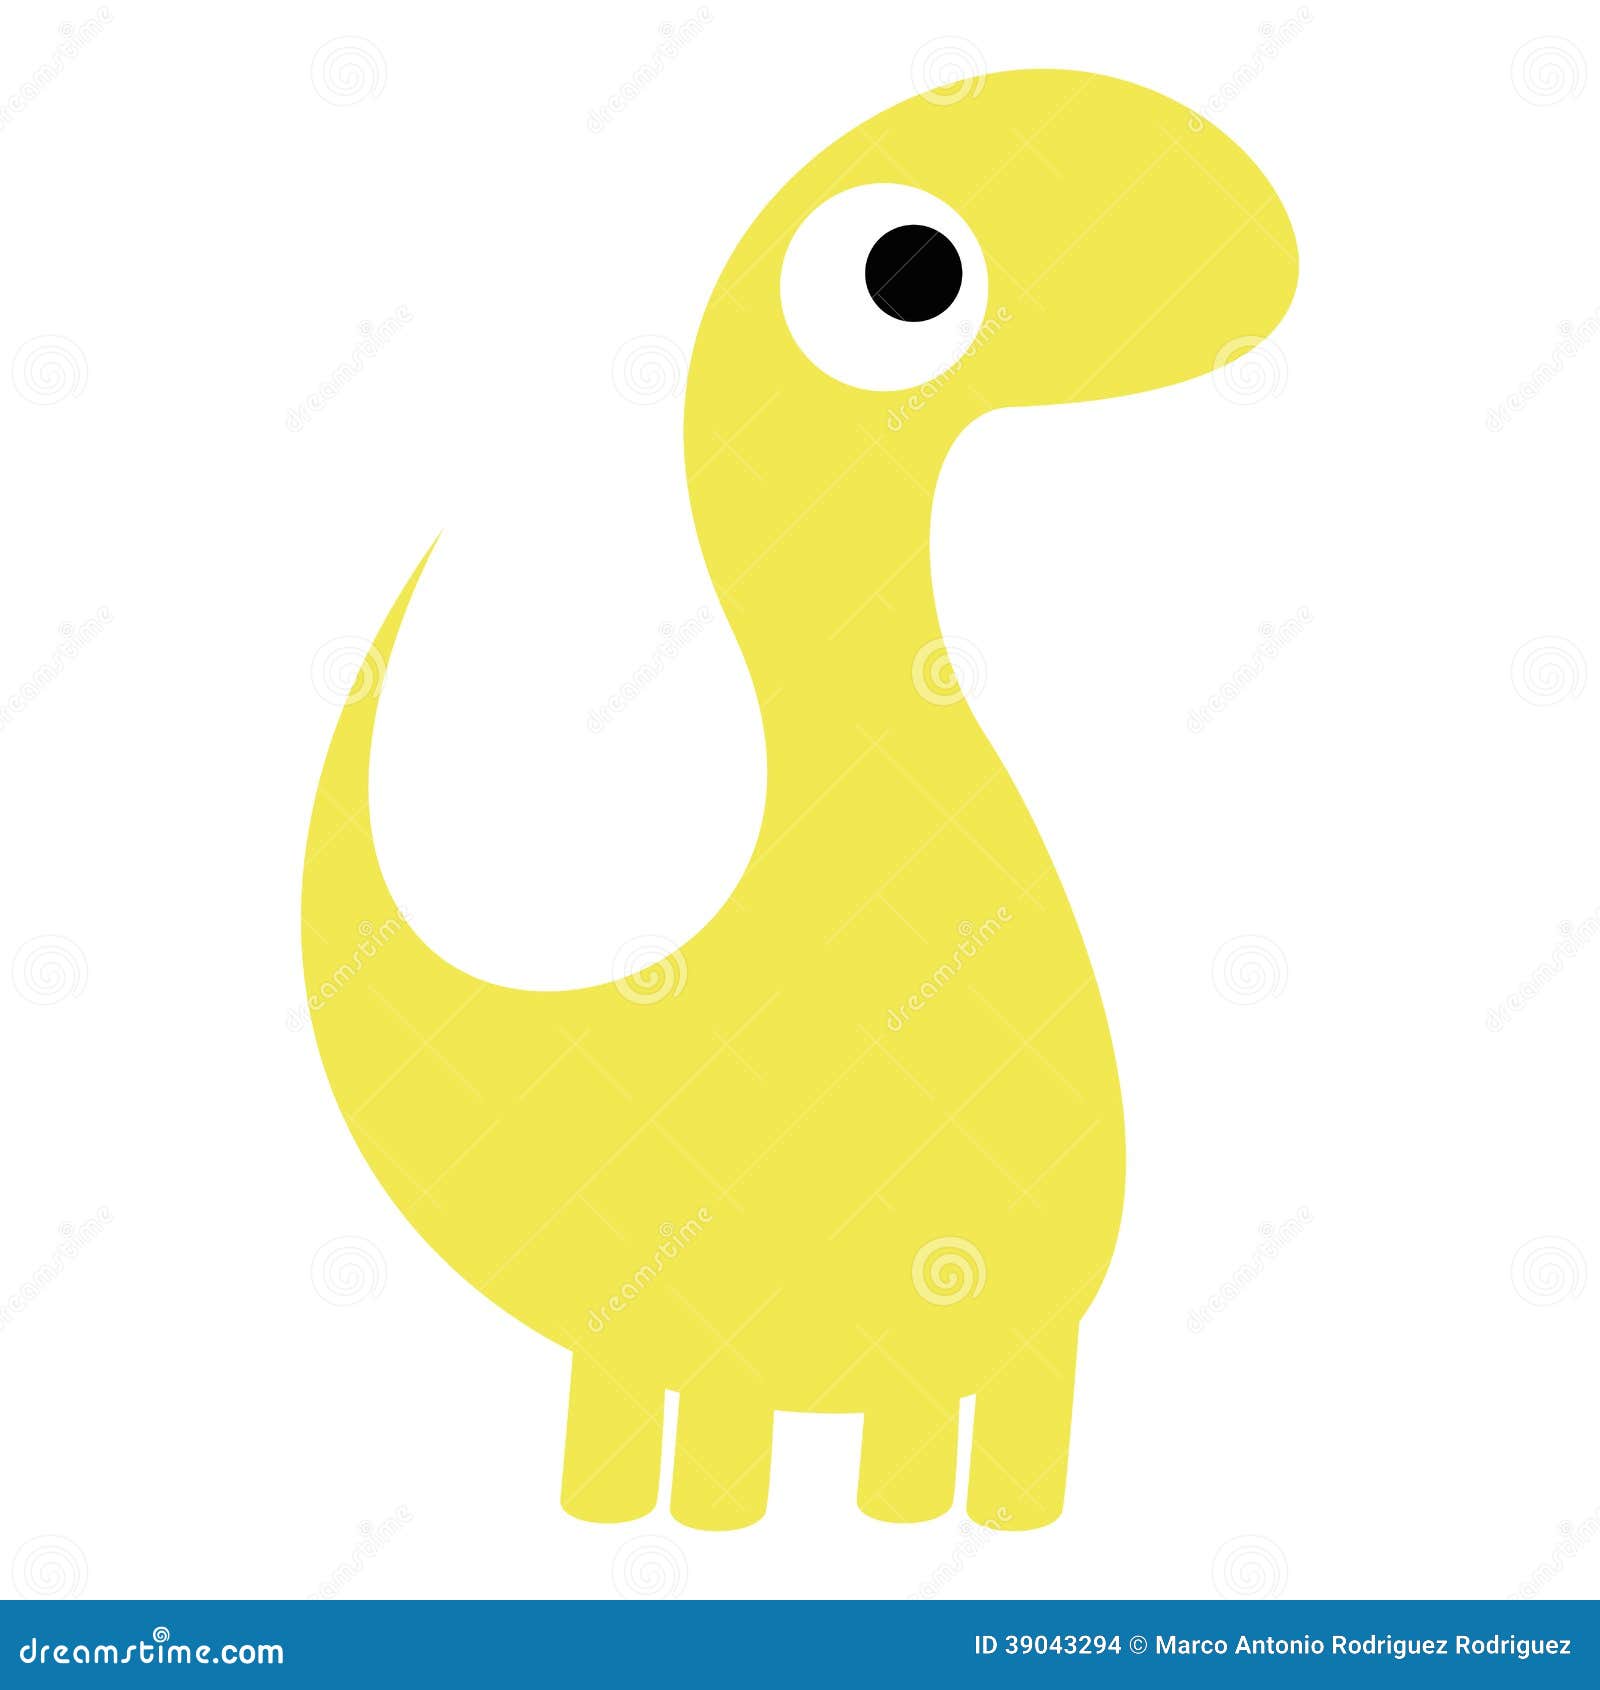 A Vector Cute Cartoon Yellow Dinosaur Isolated Stock Vector